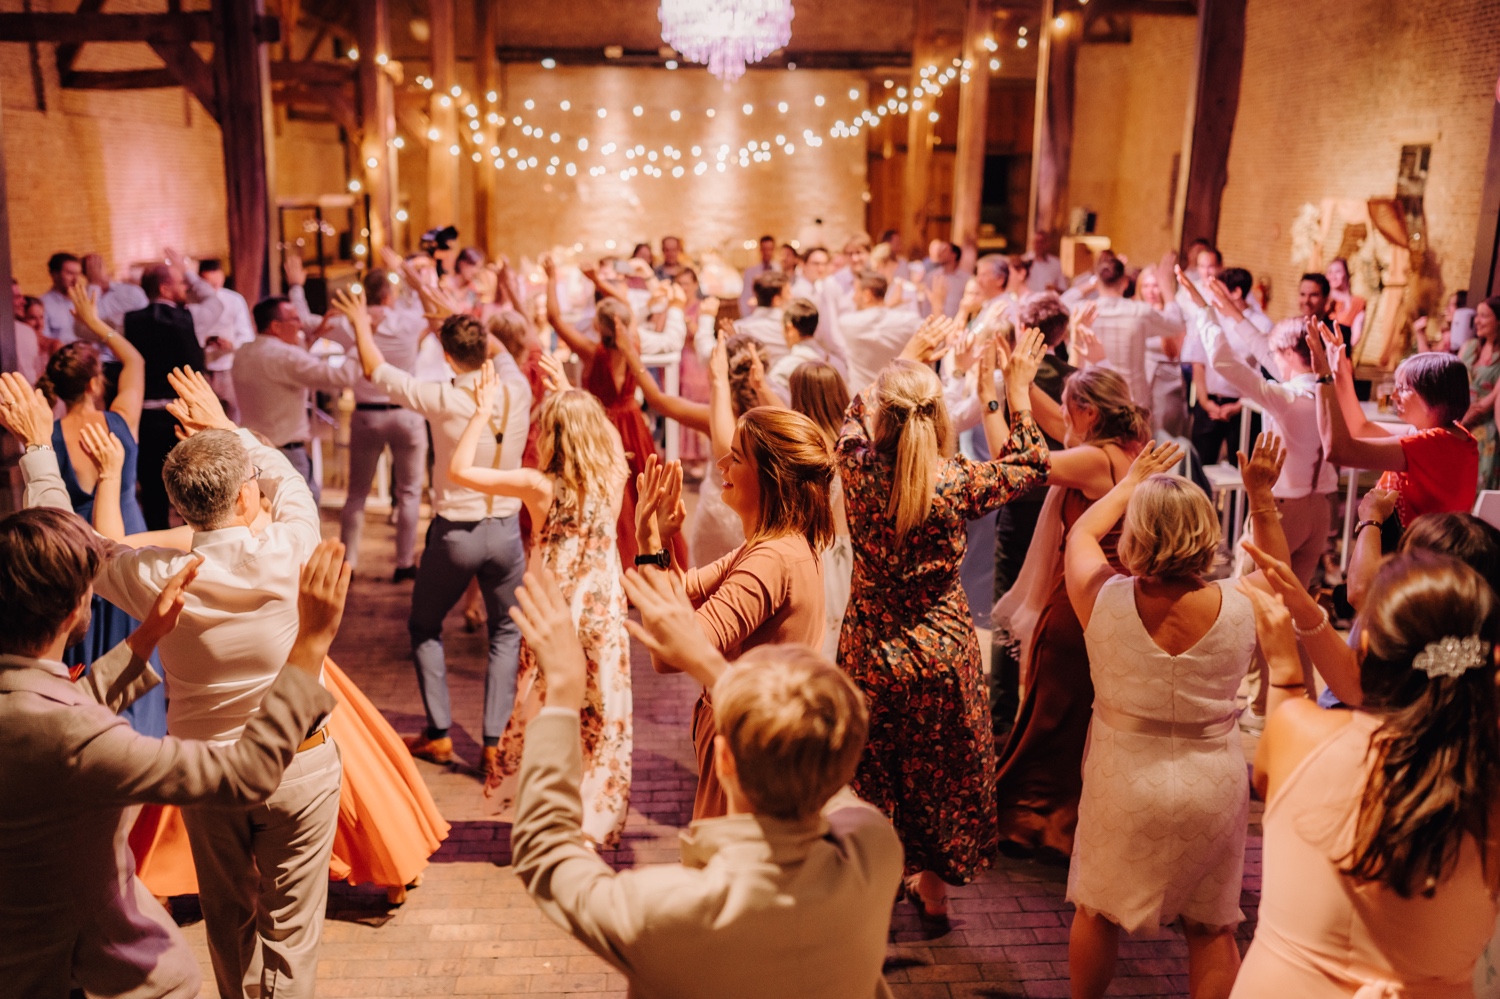 Huwelijksfotograaf Limburg - flashmob tijdens avondfeest huwelijk